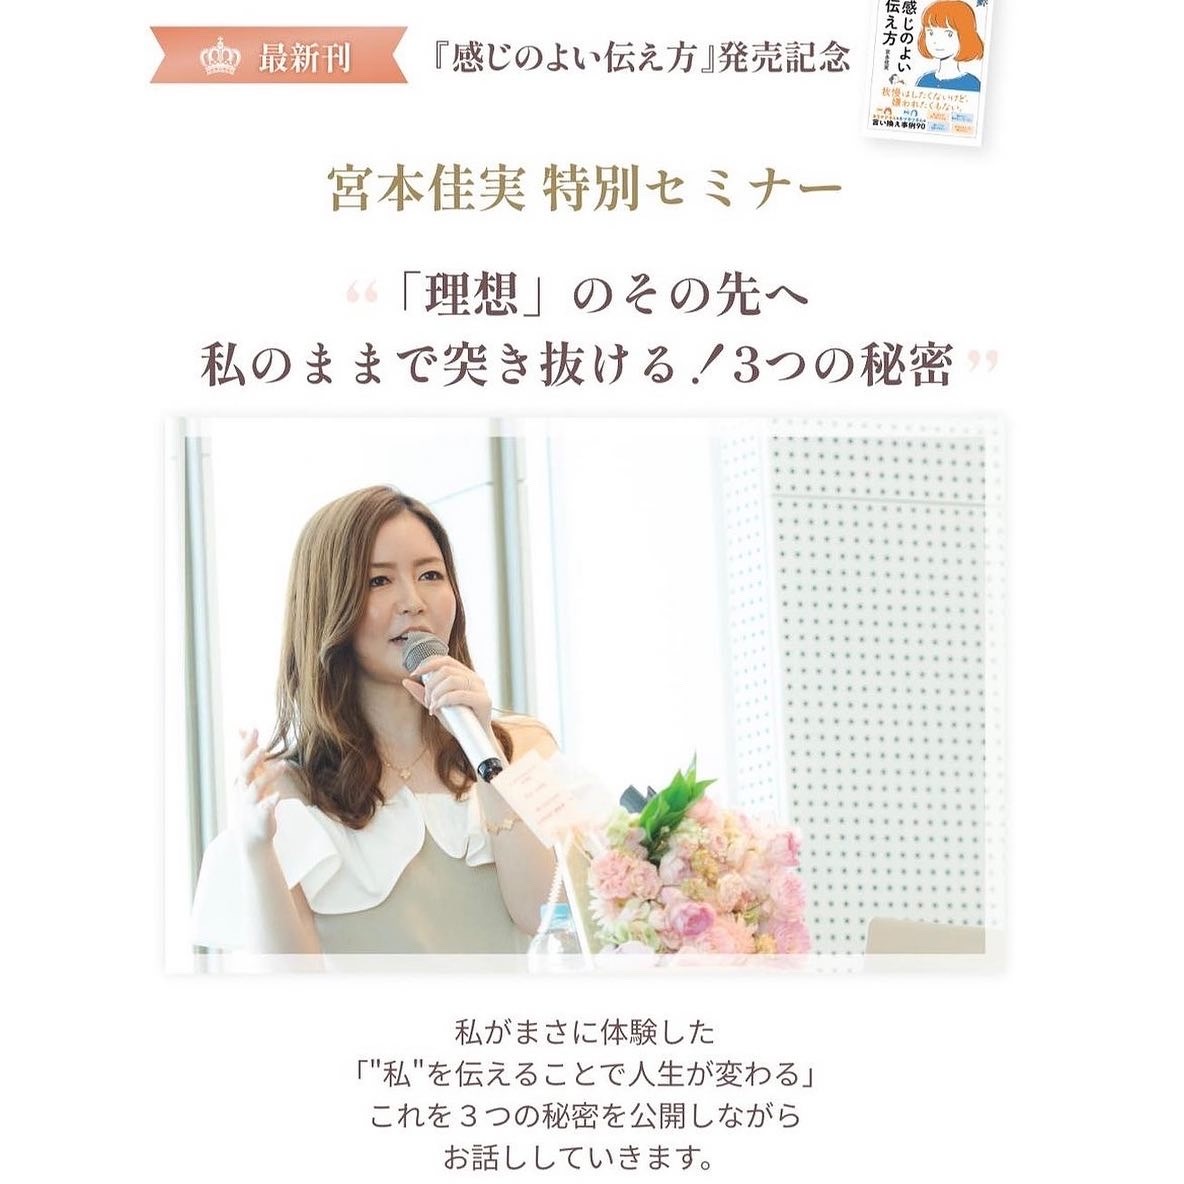 宮本佳実さんの出版イベント“私”が伝わるフェス♡に登壇します！_a0157409_21415581.jpeg